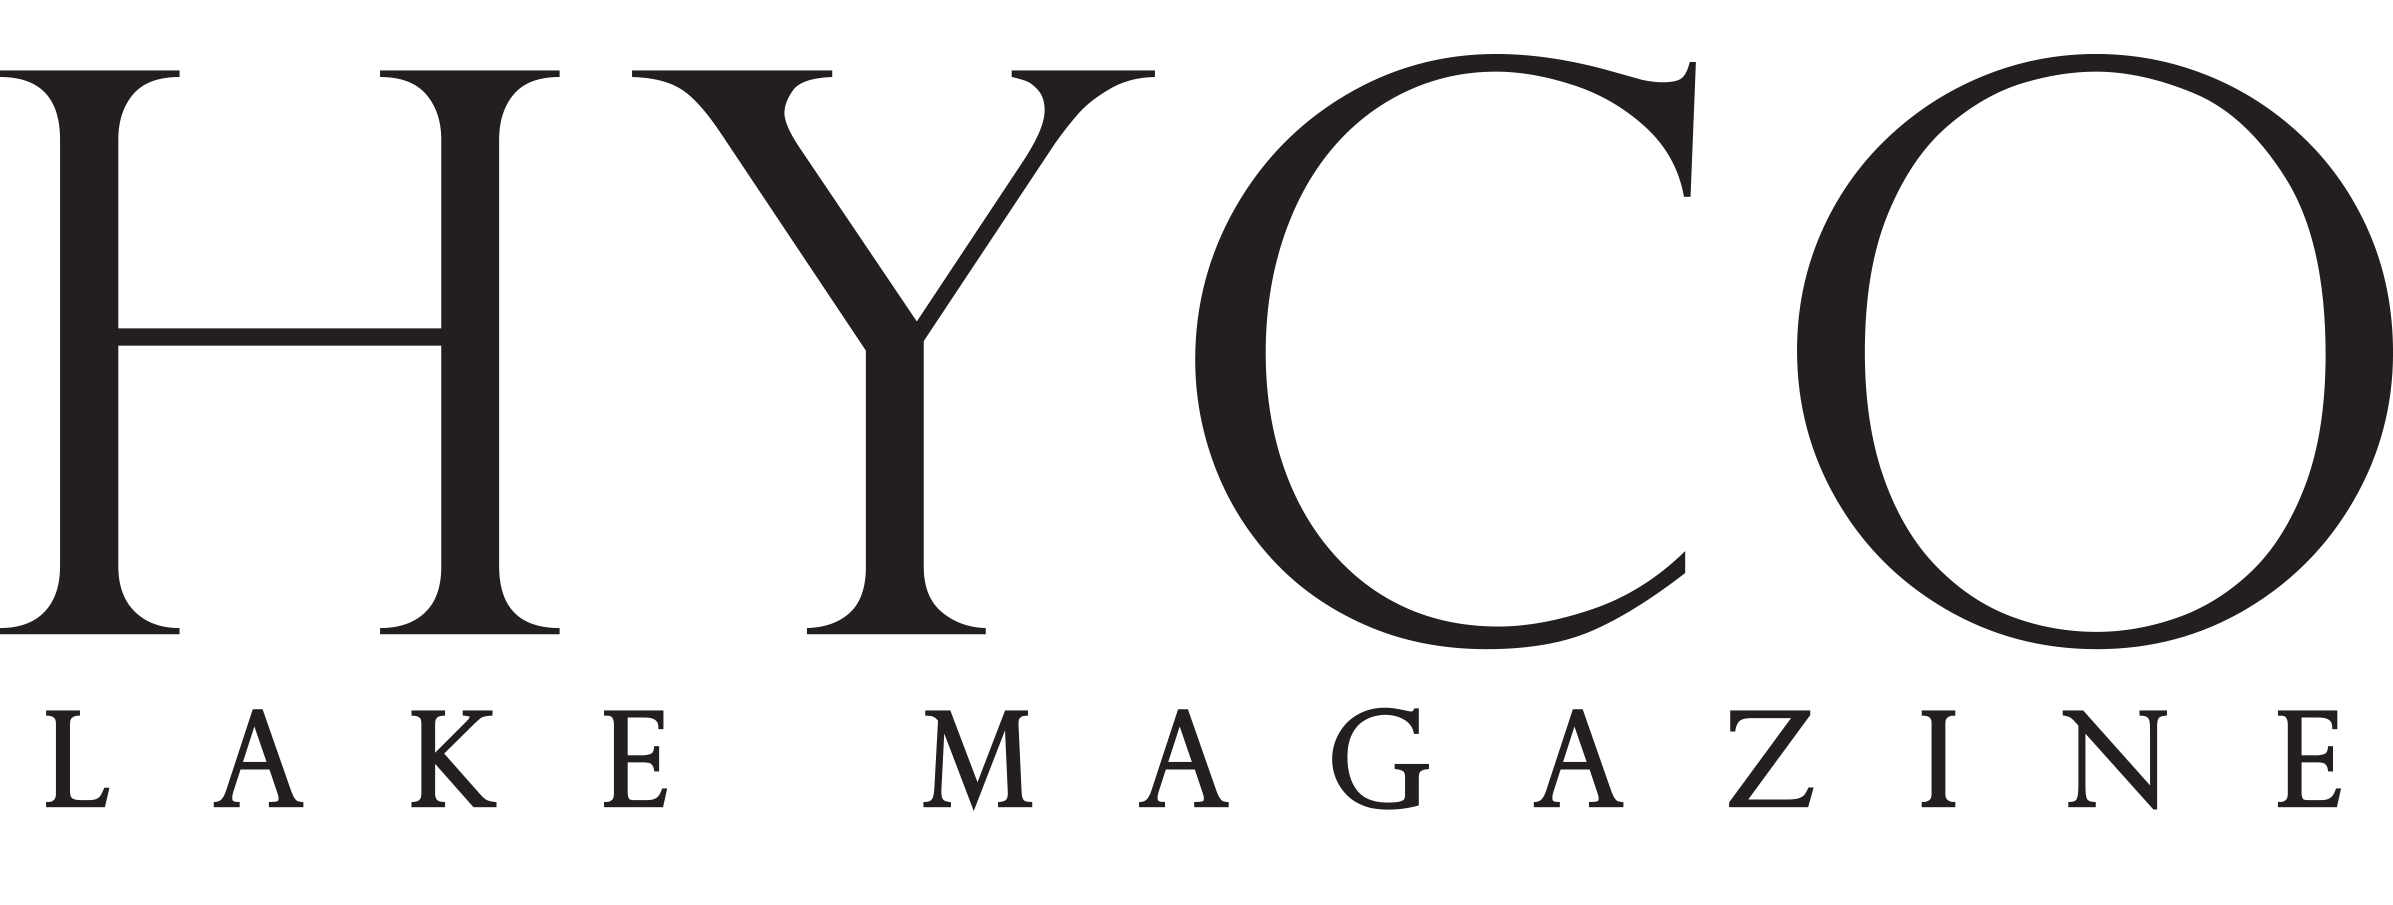 Hyco Lake Magazine